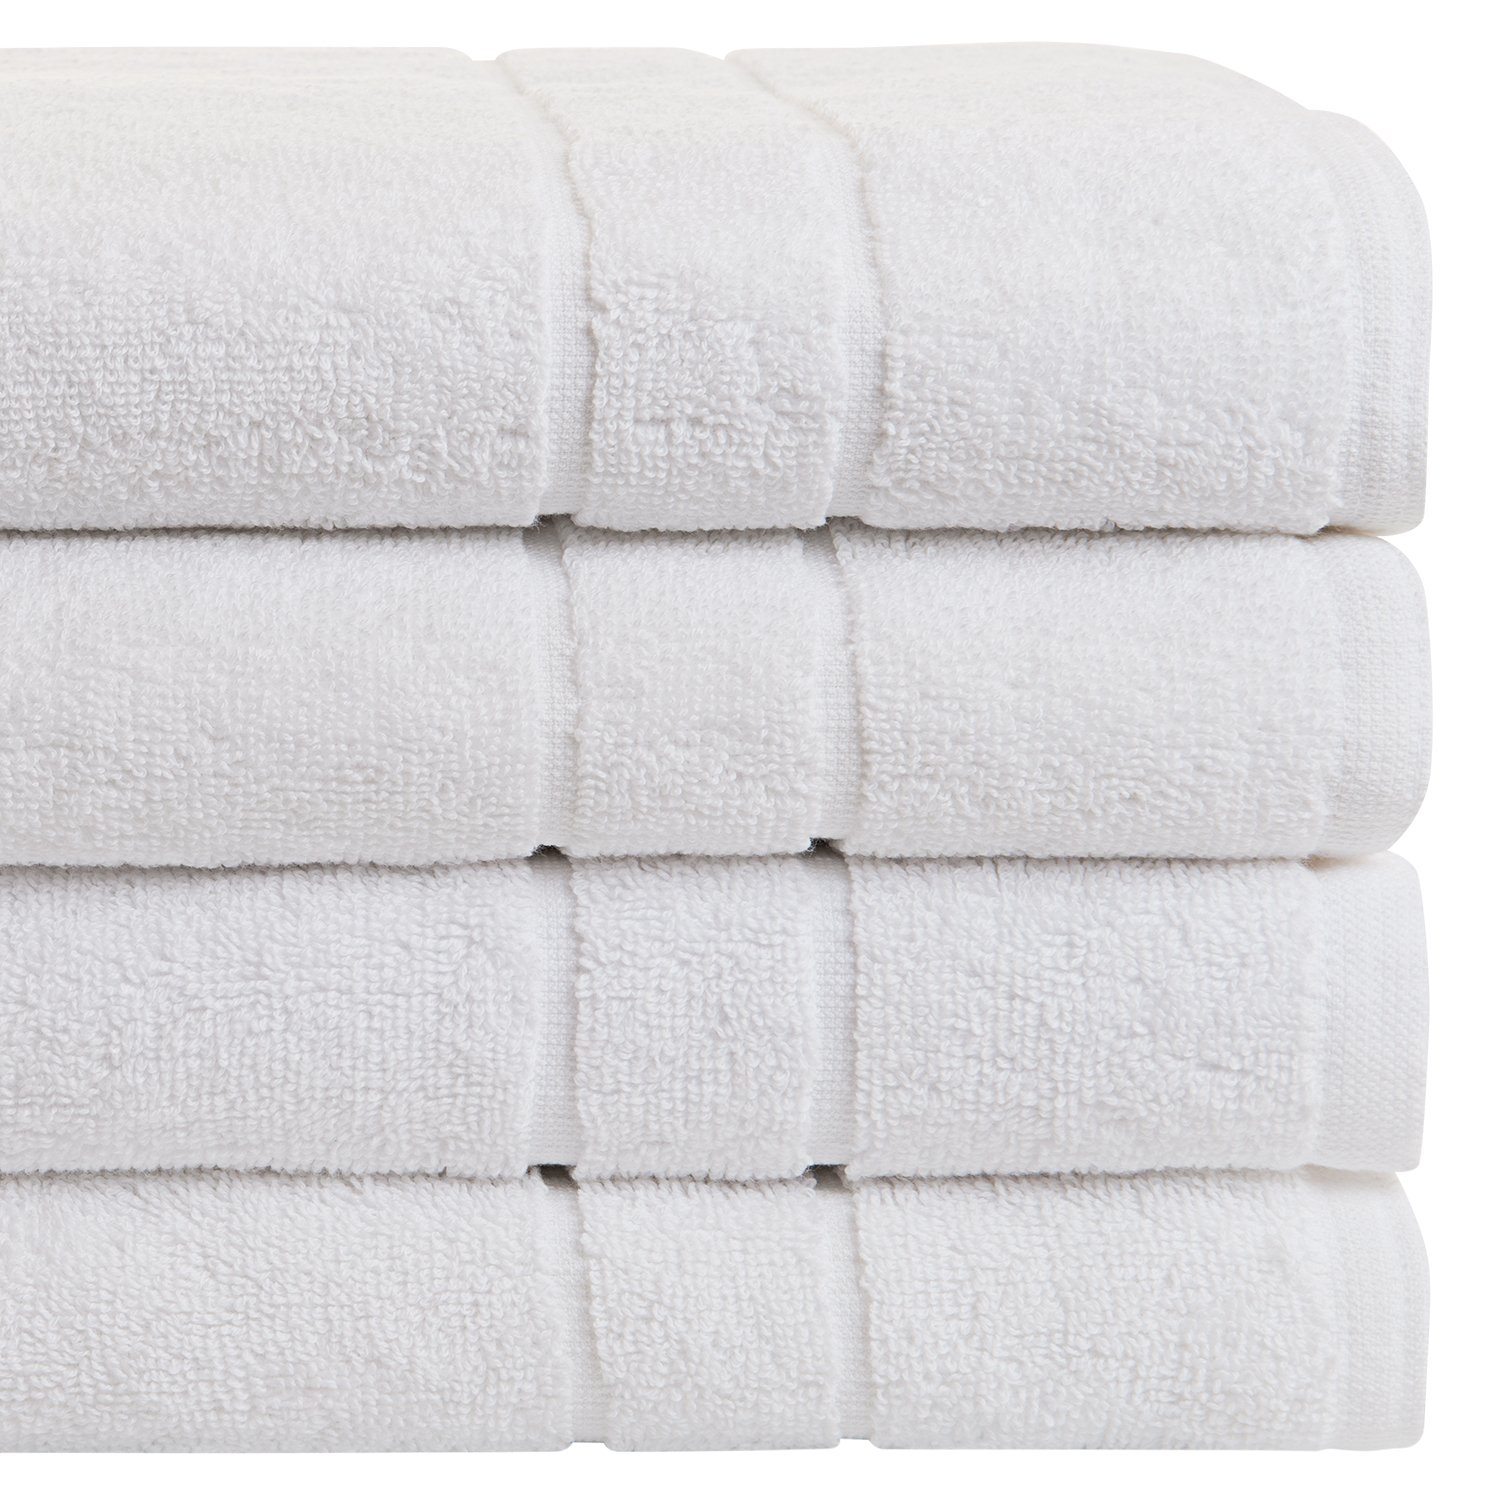 Set toalla mano, baño, 100% algodón, 500 gr. Incluye piso de baño